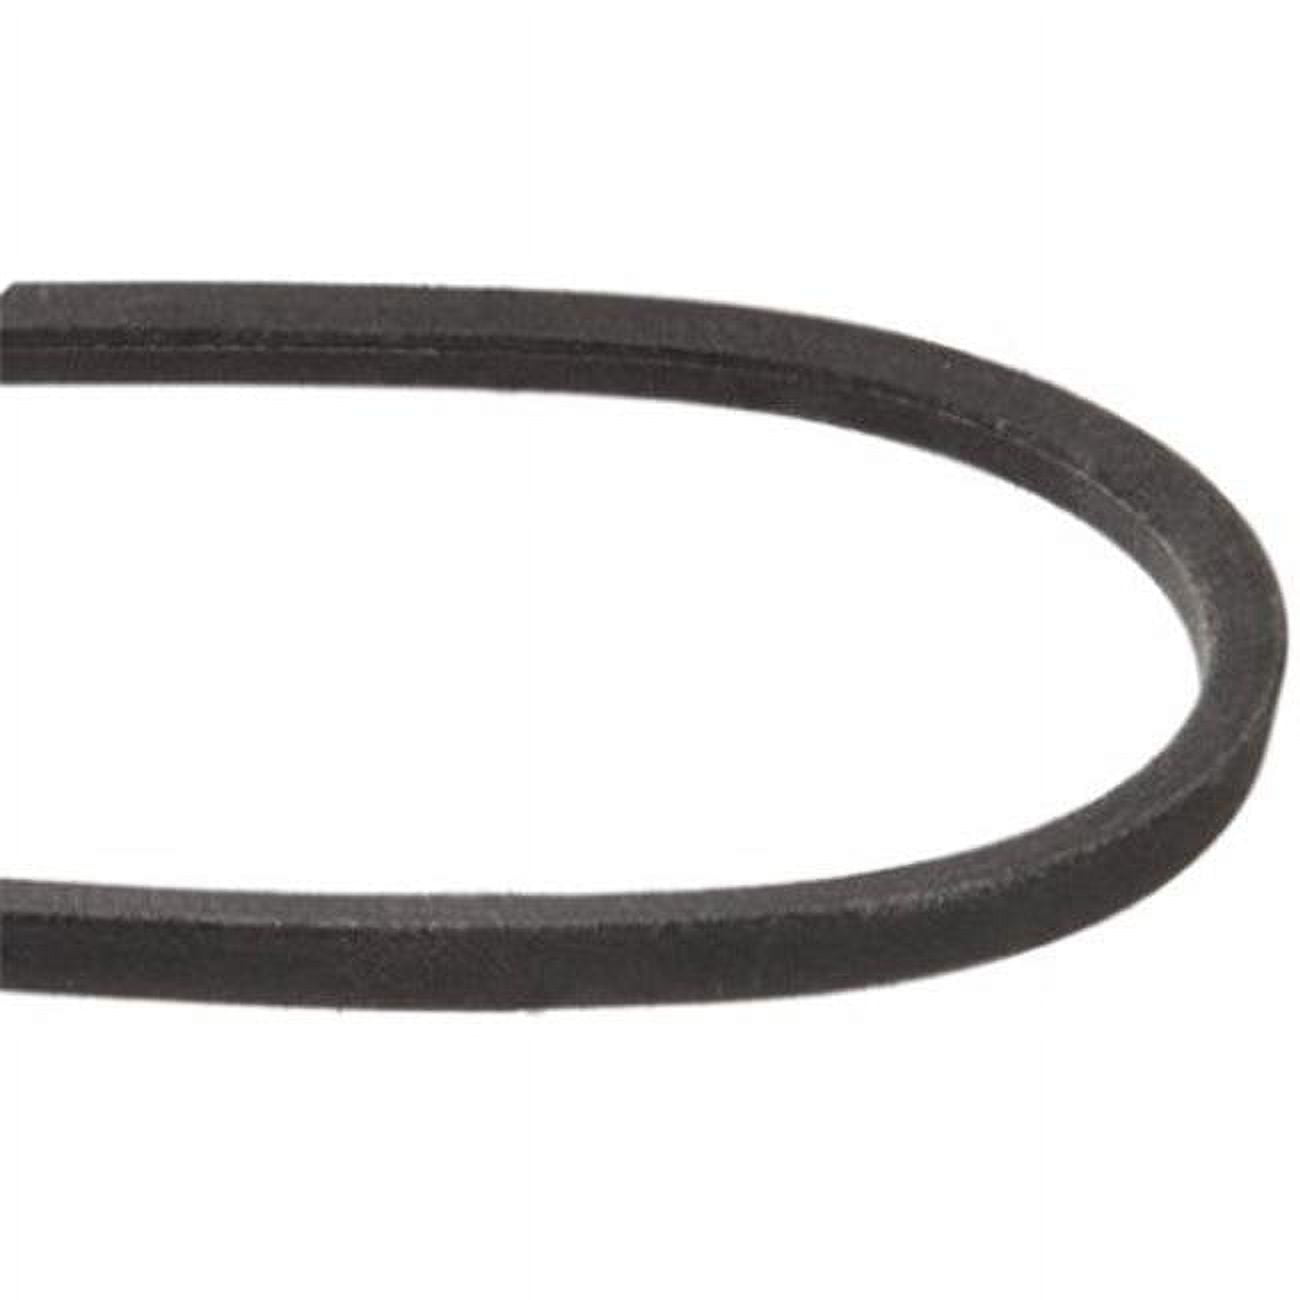 Mxv4-770 0.5 X 77 In. Heavy-duty Lawn & Garden Equipment Belt, Black